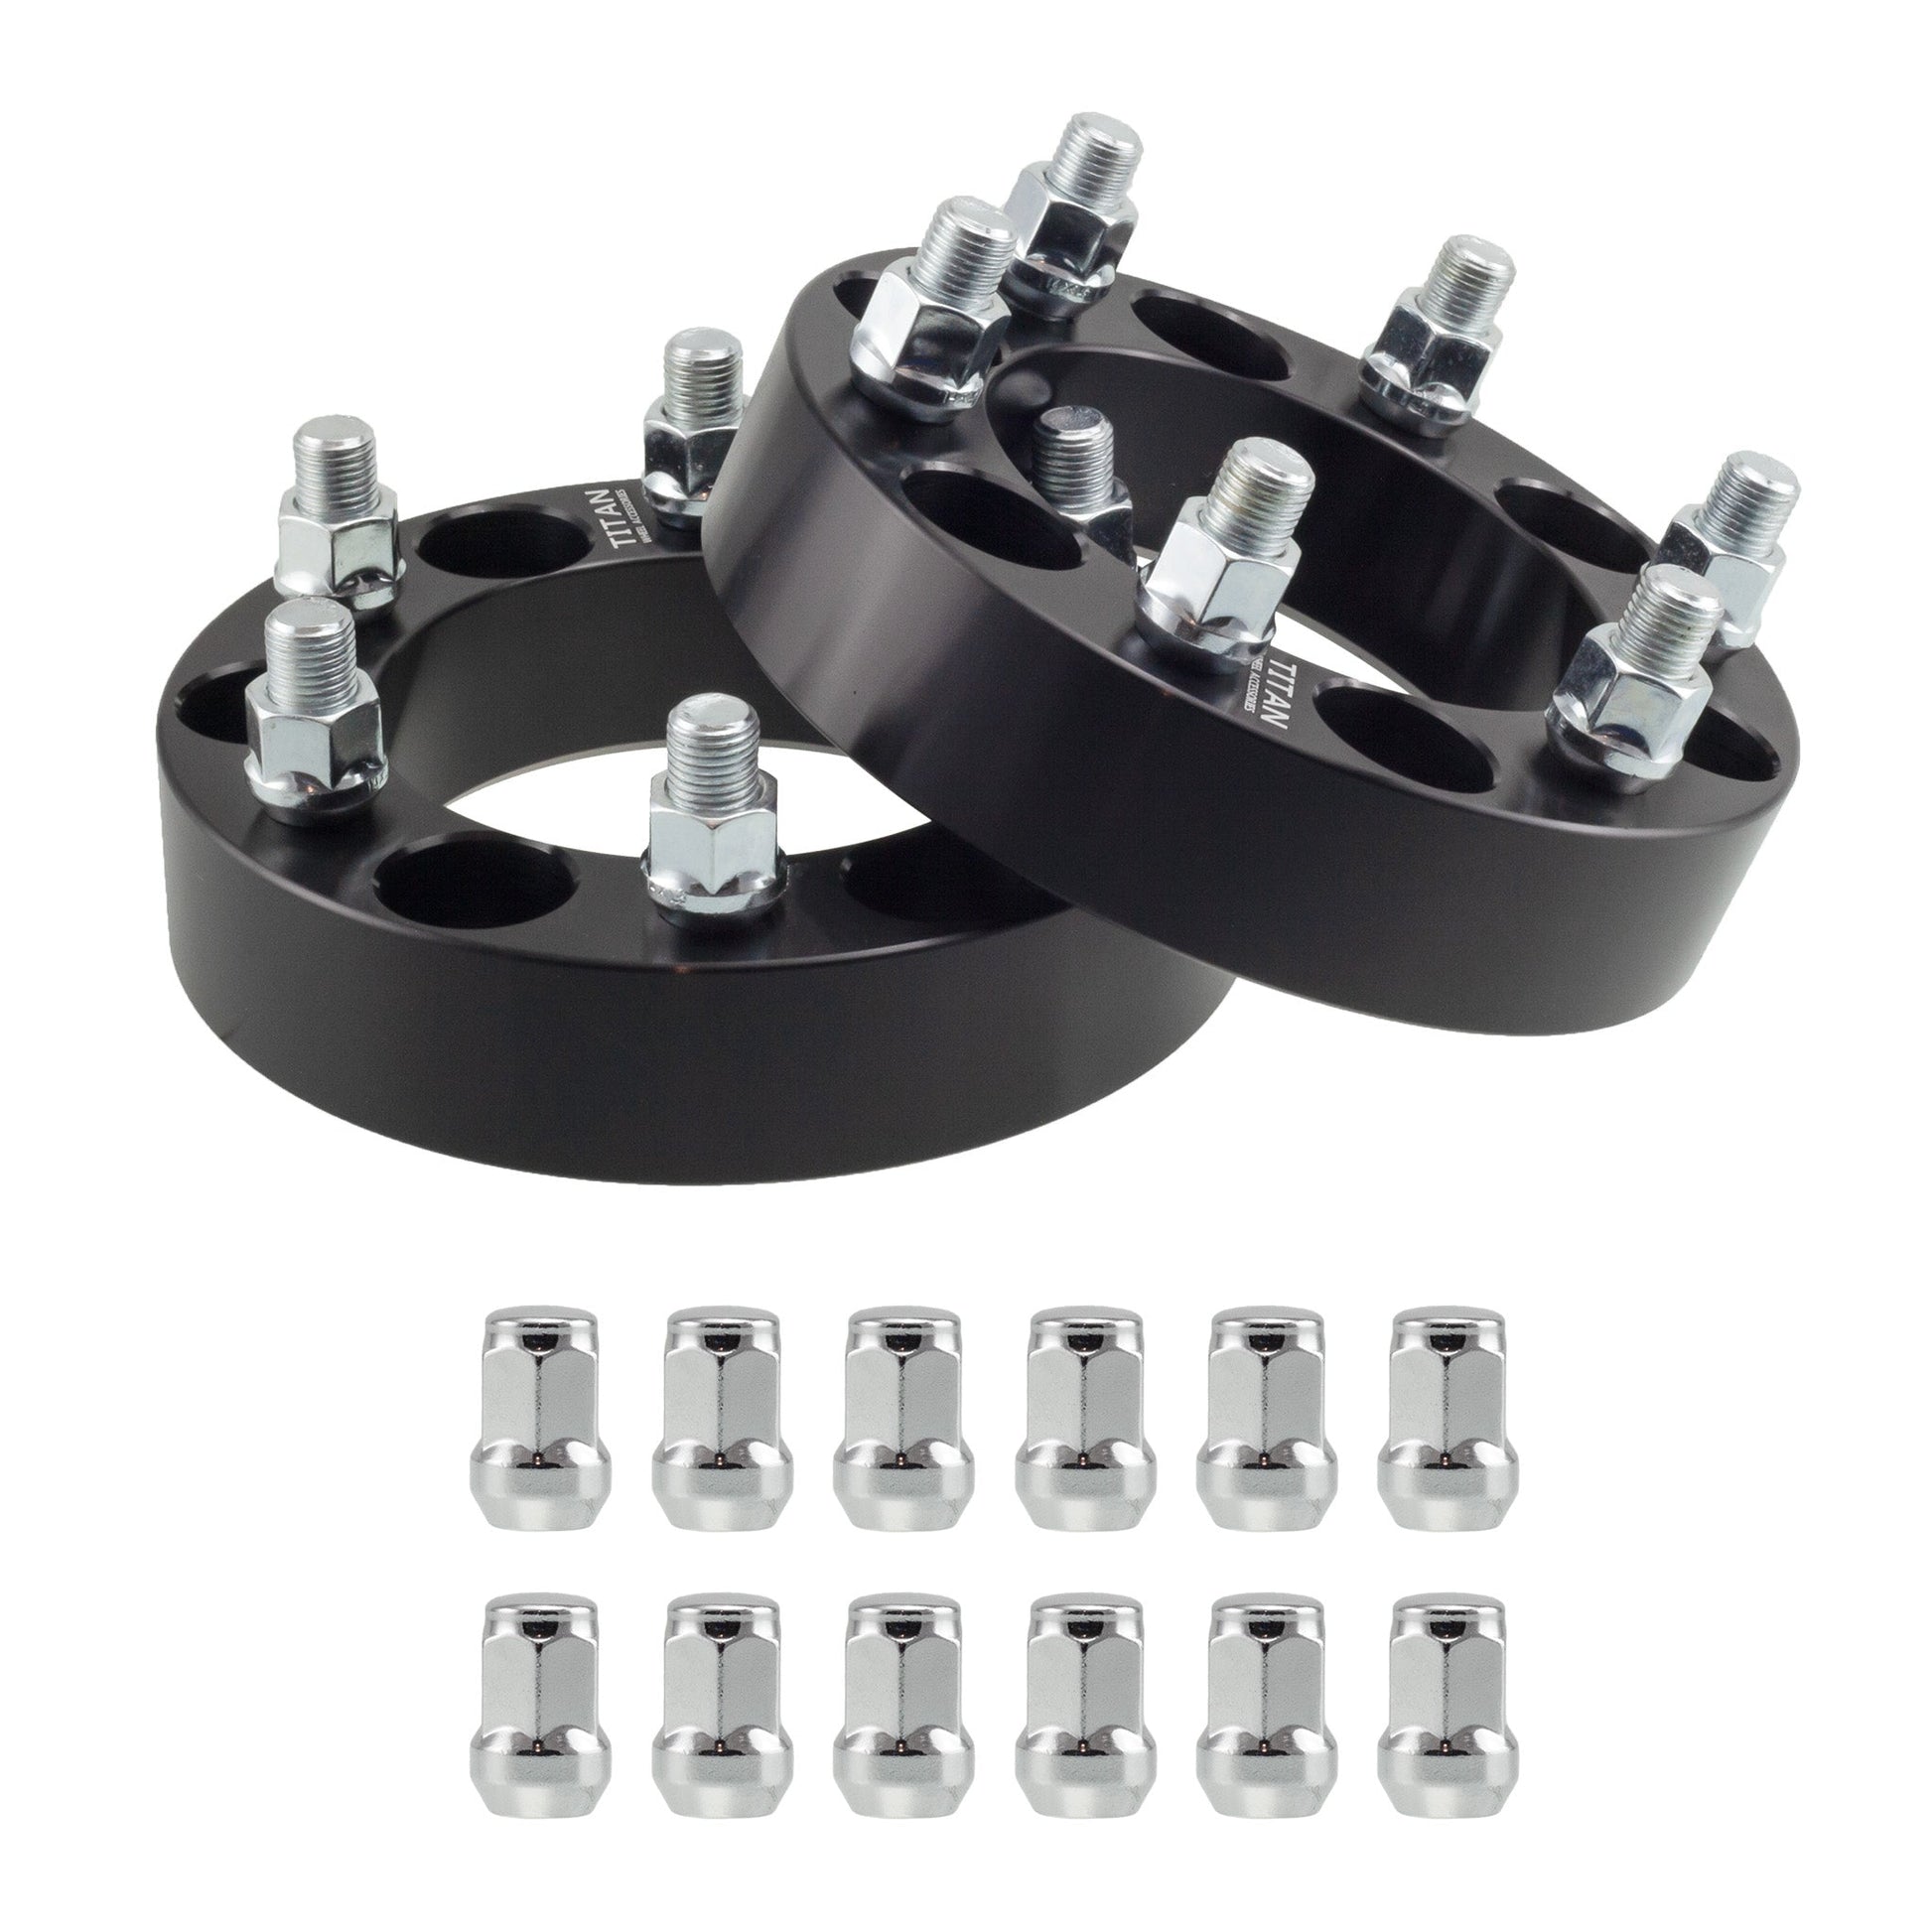 38mm (1.5") Titan Wheel Spacers for Infiniti QX80 Nissan Titan XD Ram 1500 | 6x5.5 (6x139.7) | 77.8 Hubcentric |14x1.5 Studs | Titan Wheel Accessories